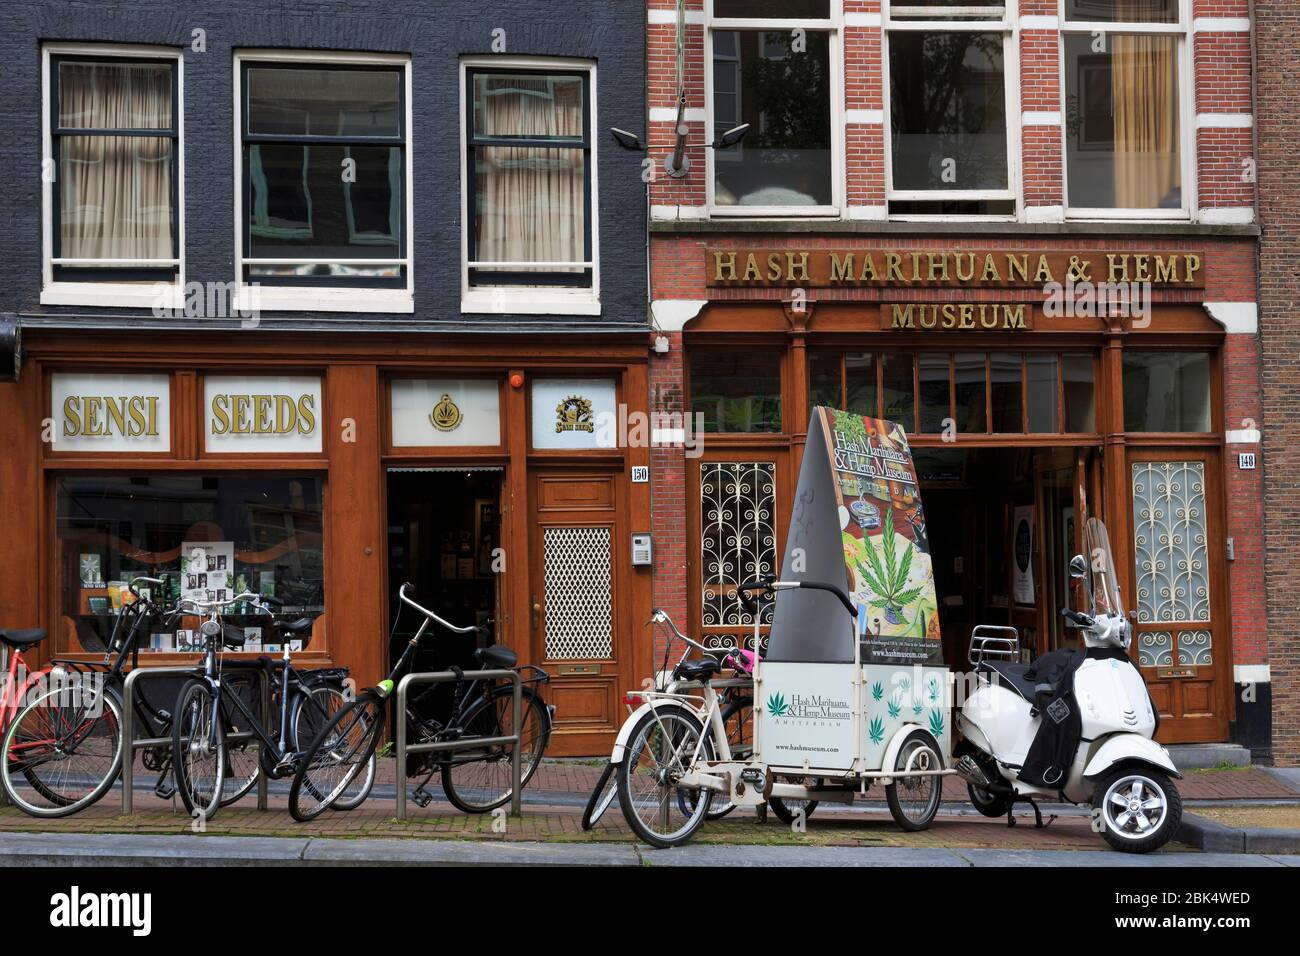 Hash, Marijuana & Hemp Museum, Amsterdam, North Holland, Netherlands, Europe Stock Photo